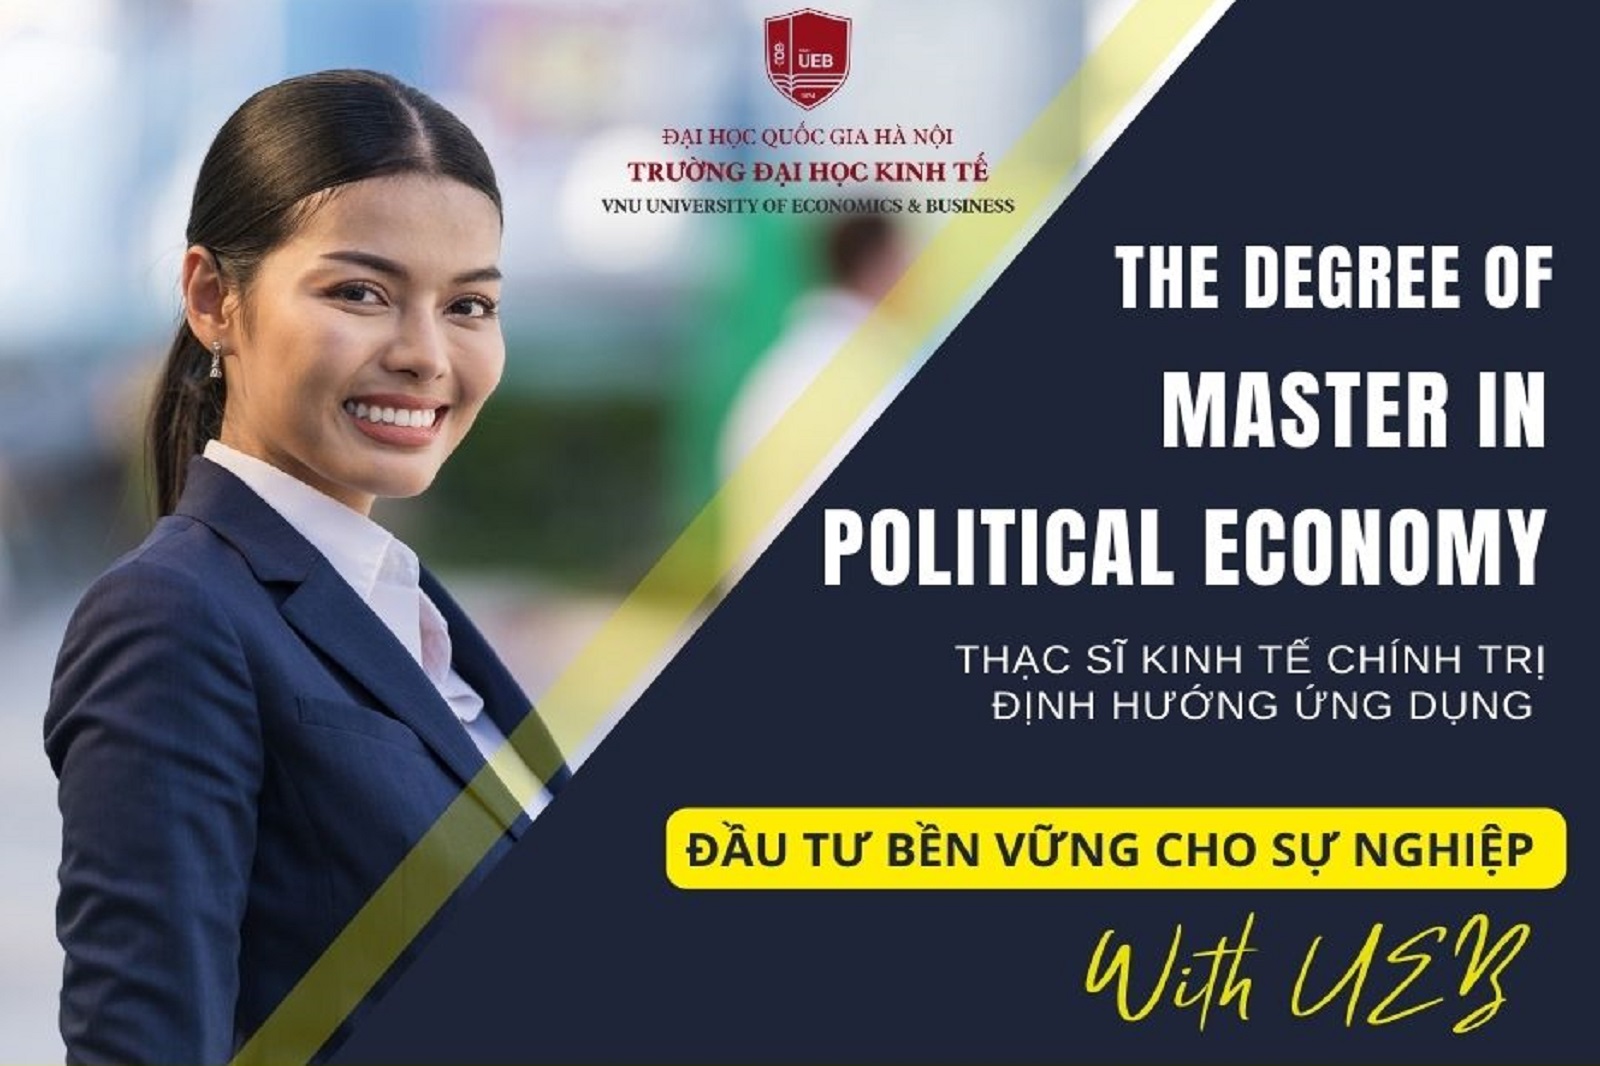 Học Thạc sĩ Kinh tế chính trị định hướng ứng dụng của Trường Đại học Kinh tế, ĐHQGHN để đầu tư bền vững cho sự nghiệp